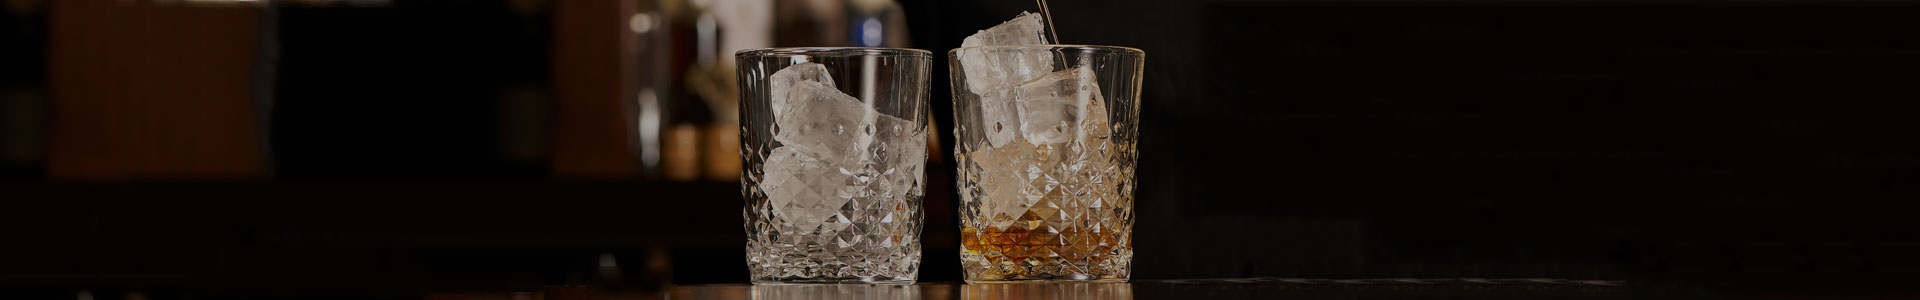 Zwei Tumbler Gläser mit Dekor der Carats-Serie von Onis stehen auf einem Bar-Tresen.